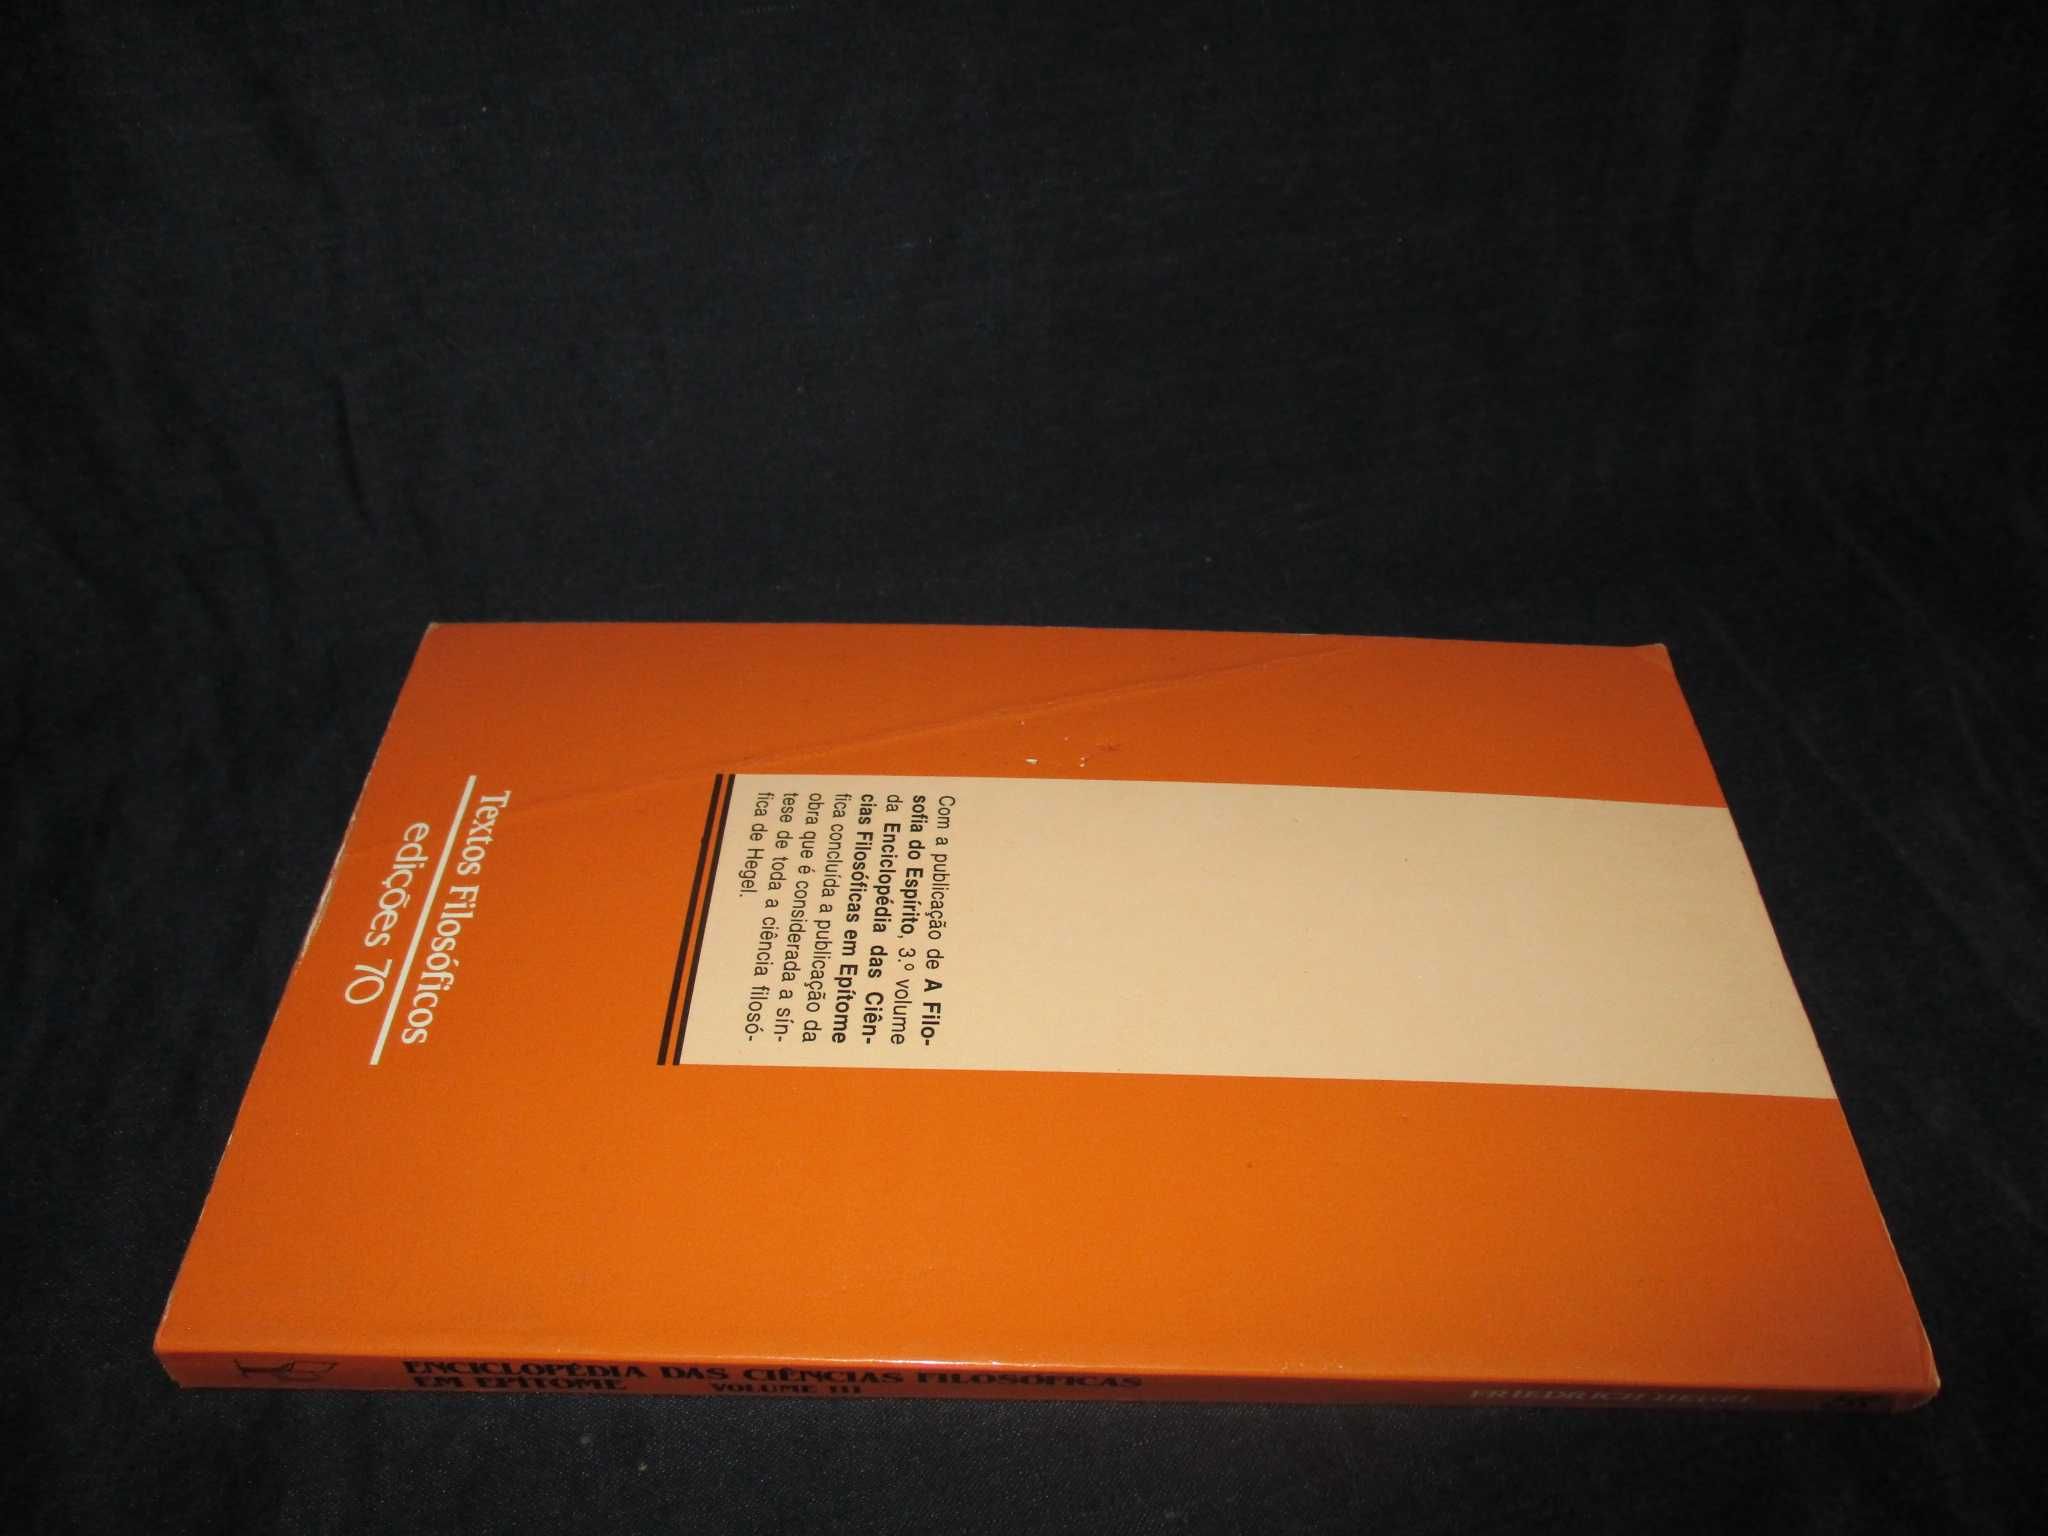 Livro Enciclopédia das Ciências Filosóficas em Epítome III Hegel